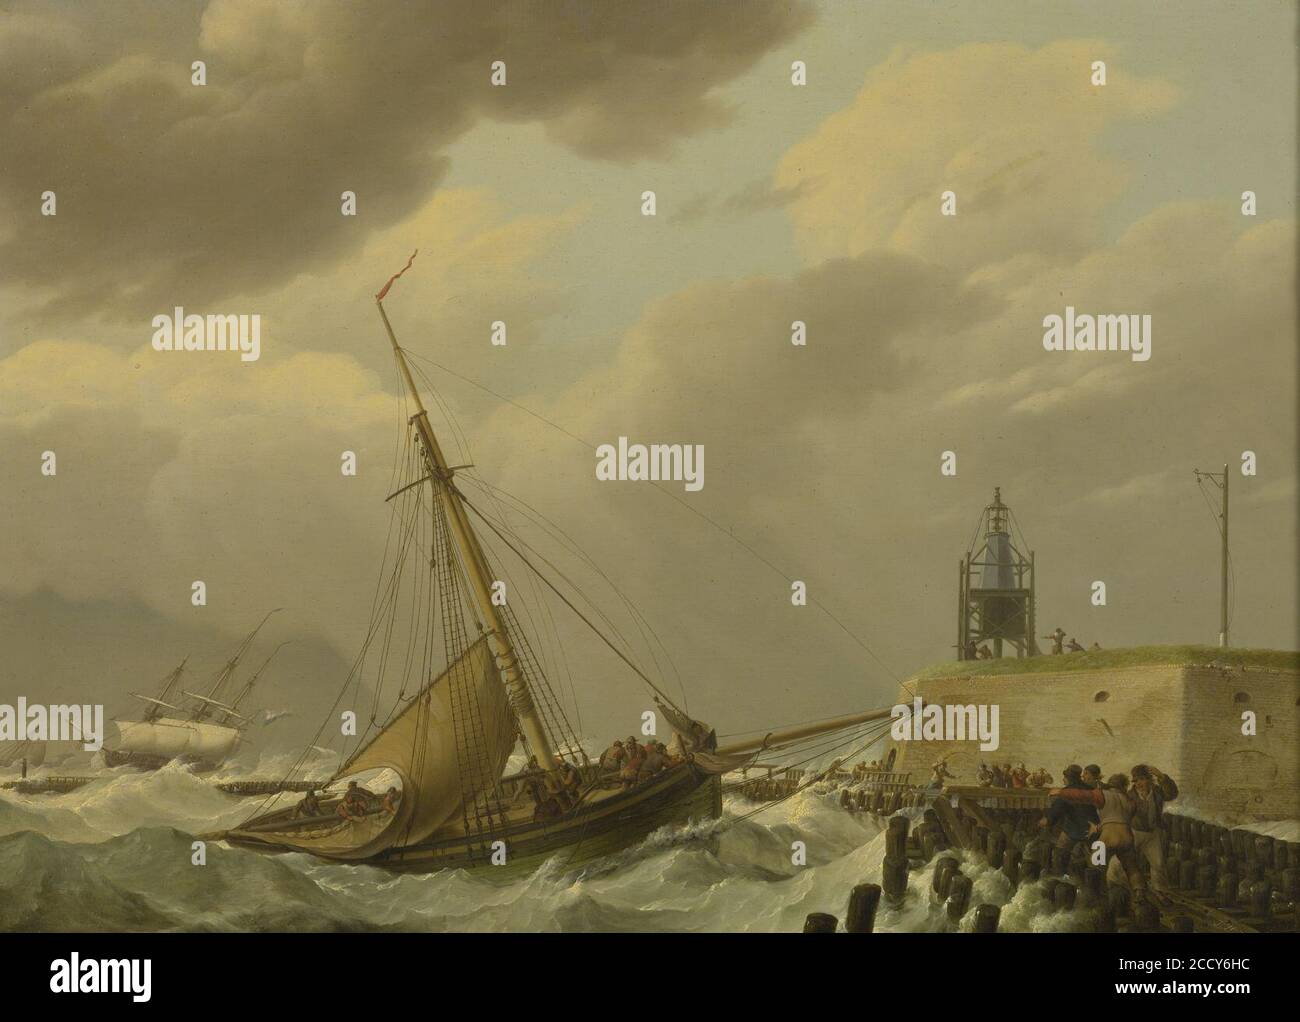 Johannes Hermanus Koekkoek - Ships in stormy seas. Stock Photo